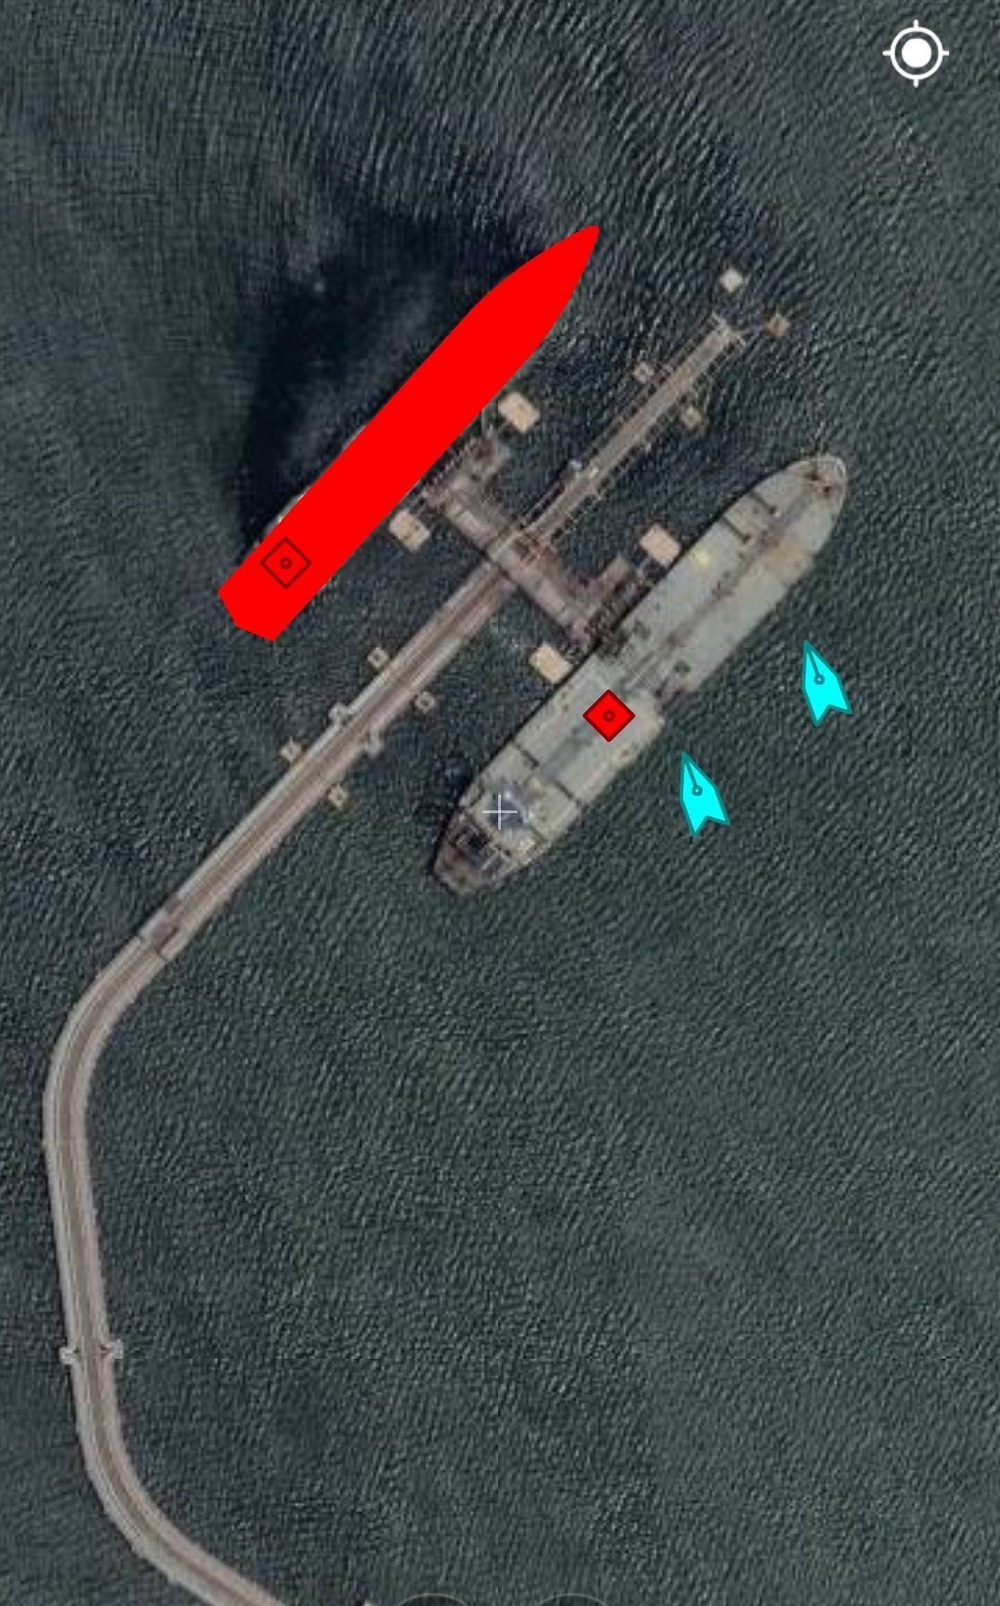 NÓNG: Đối đầu nghẹt thở, Venezuela và Iran thắng 1-0, tàu dầu Iran cắt mặt tàu đặc chủng mang cờ Mỹ - Ảnh 11.